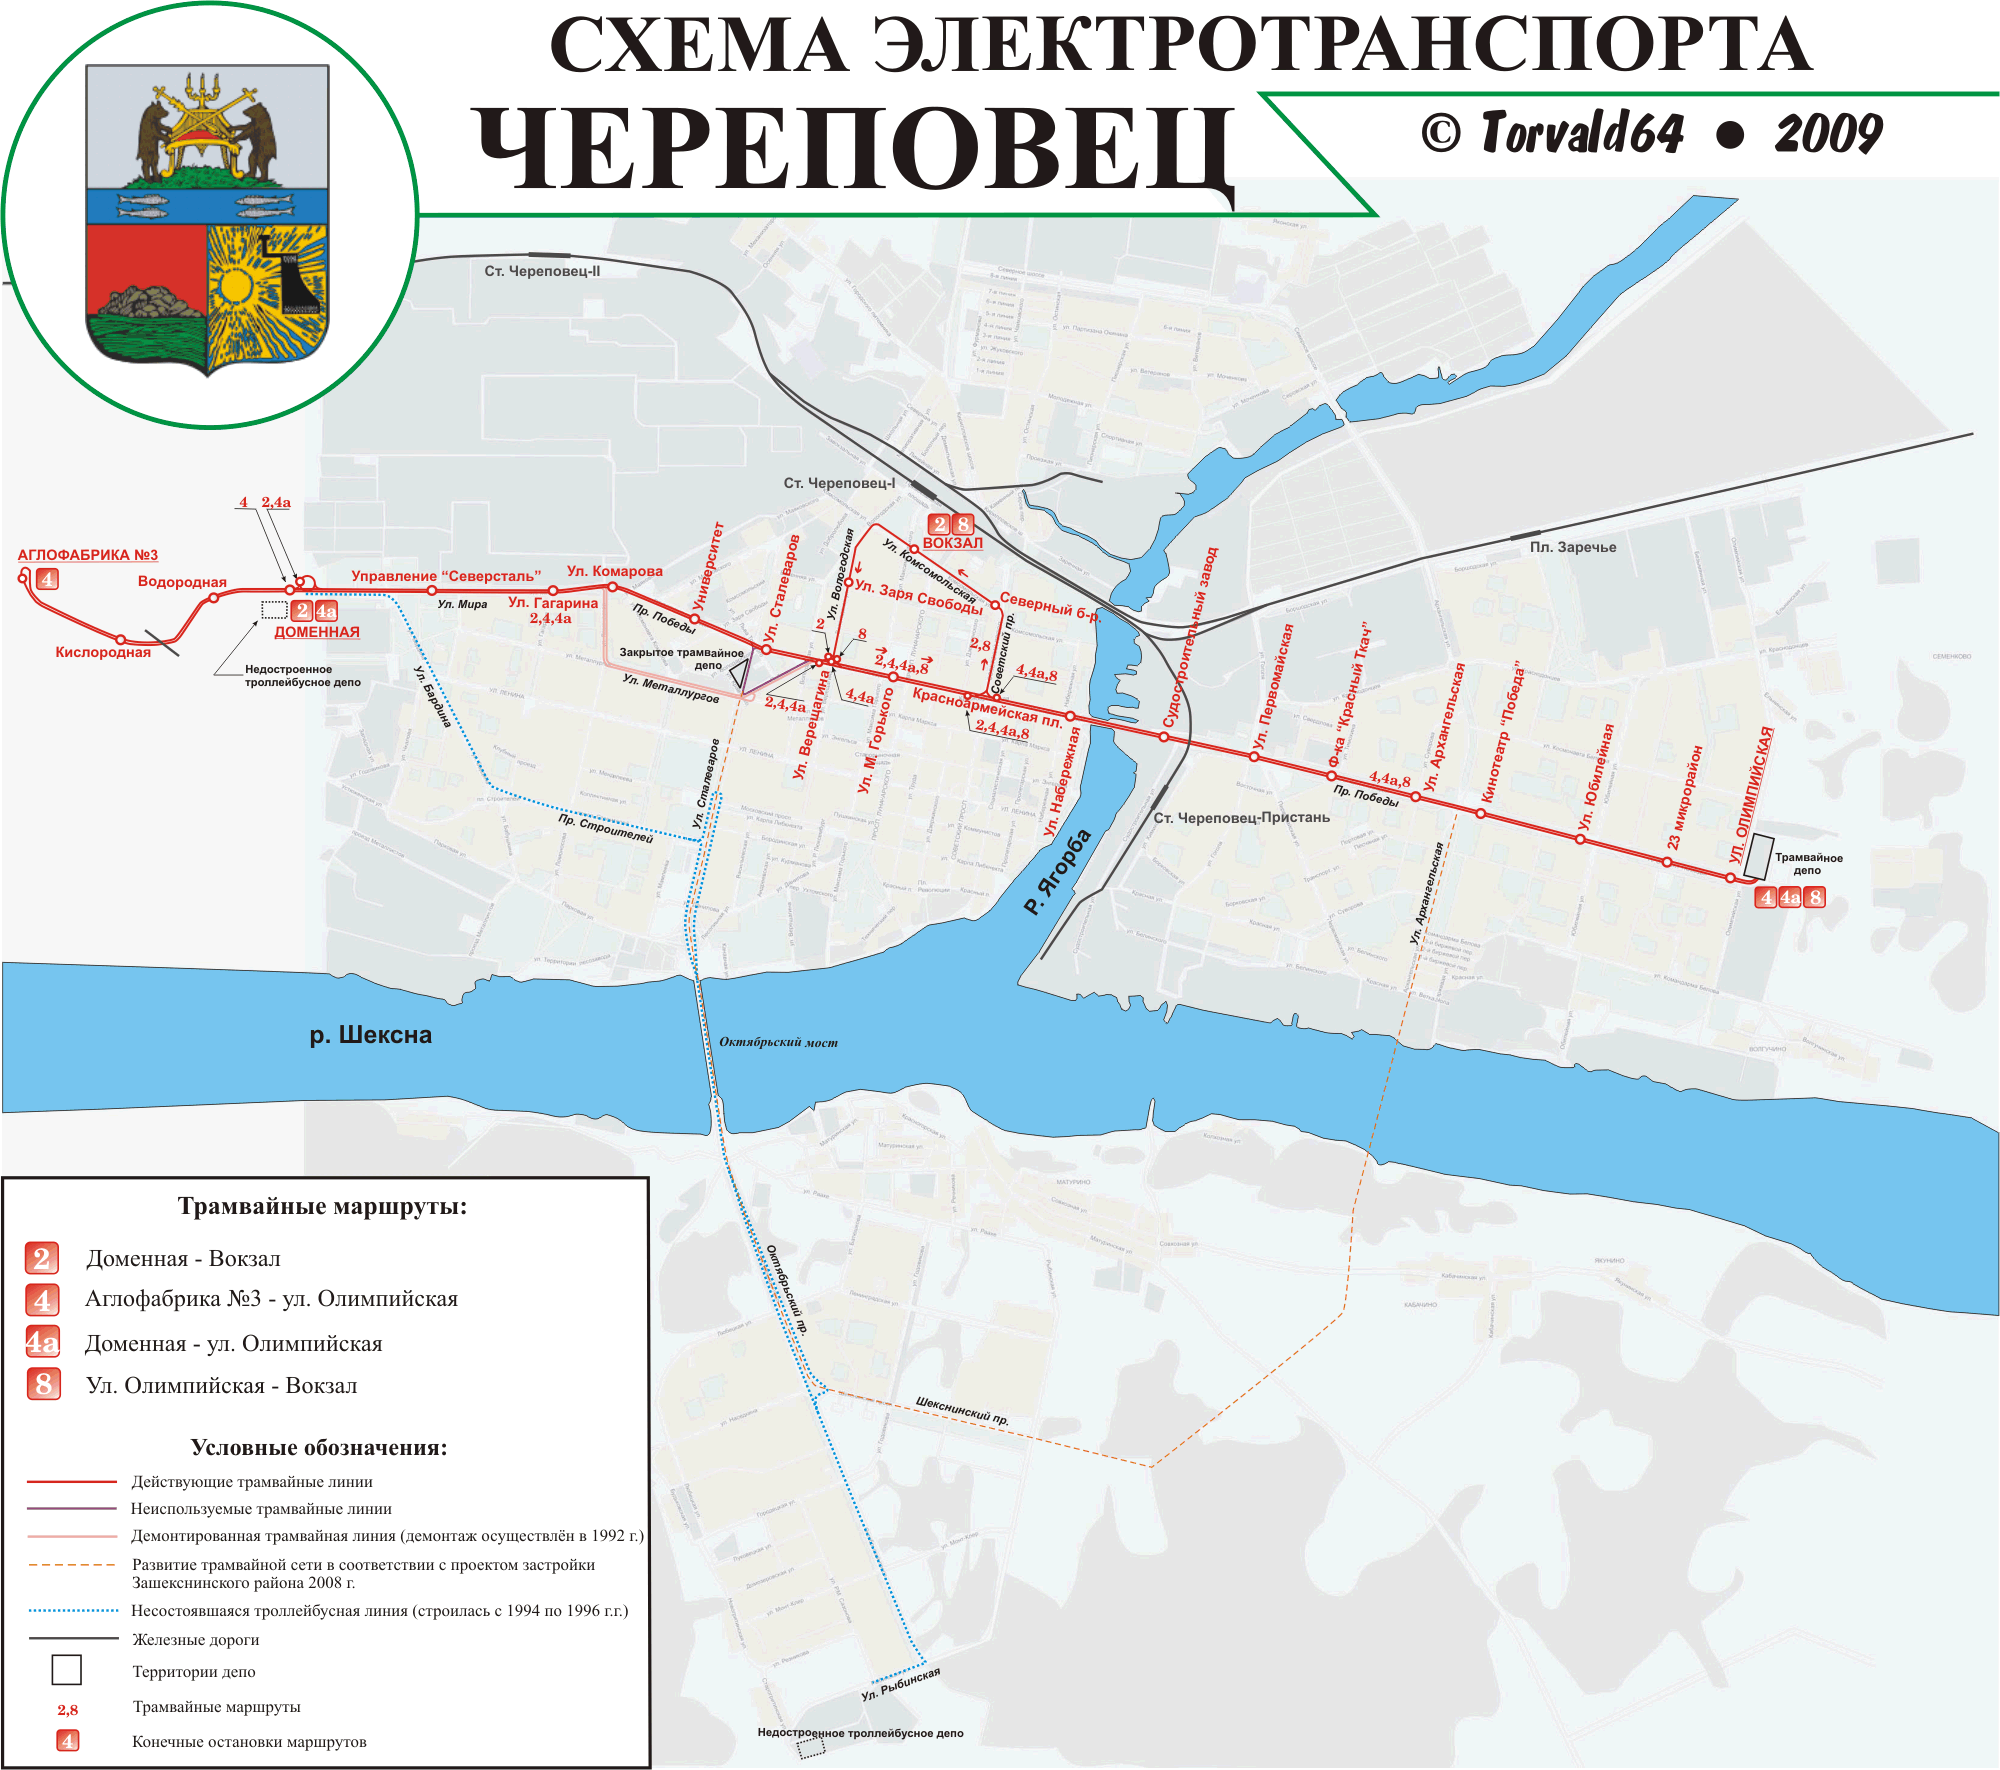 Cherepovets — Maps